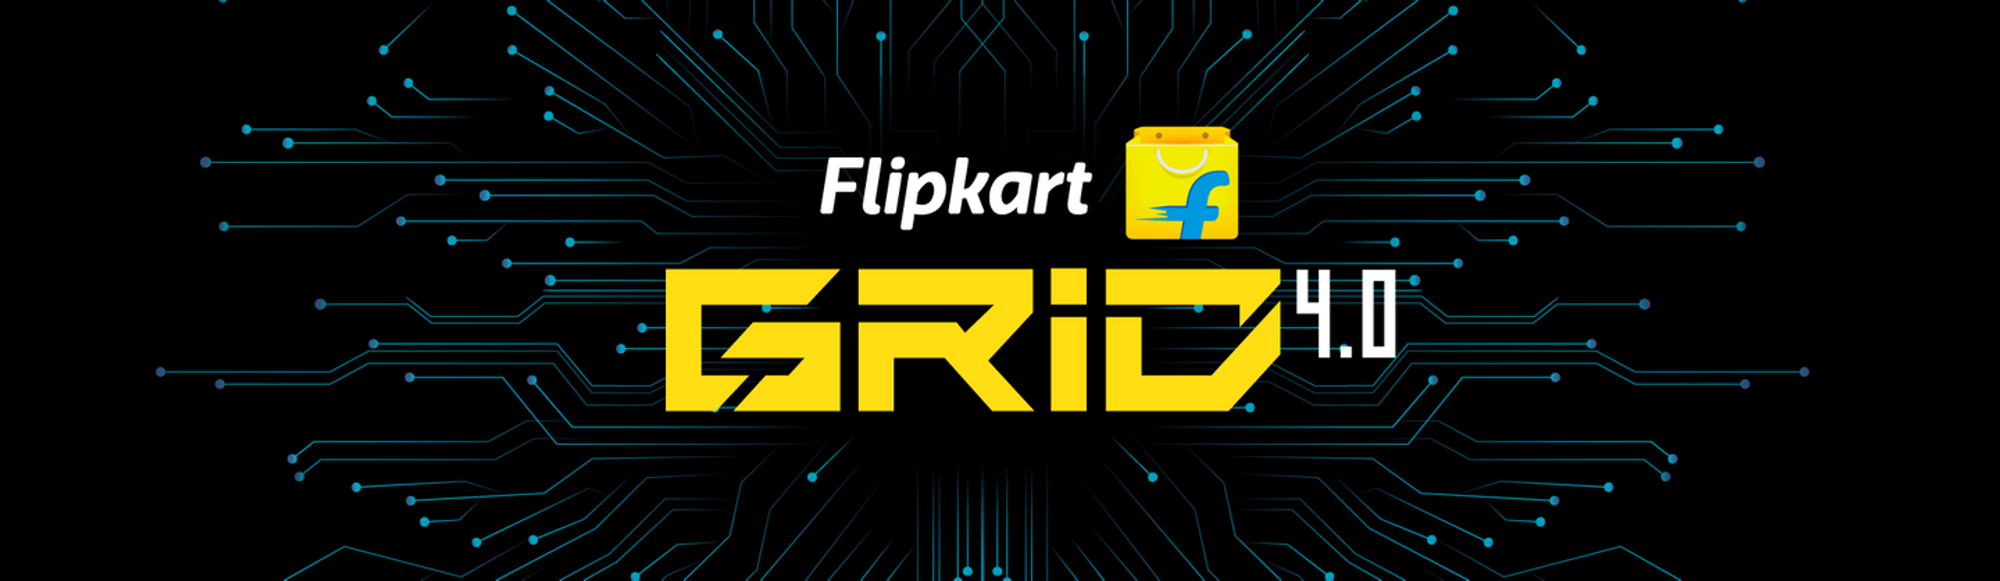 FlipKart Grid4.0